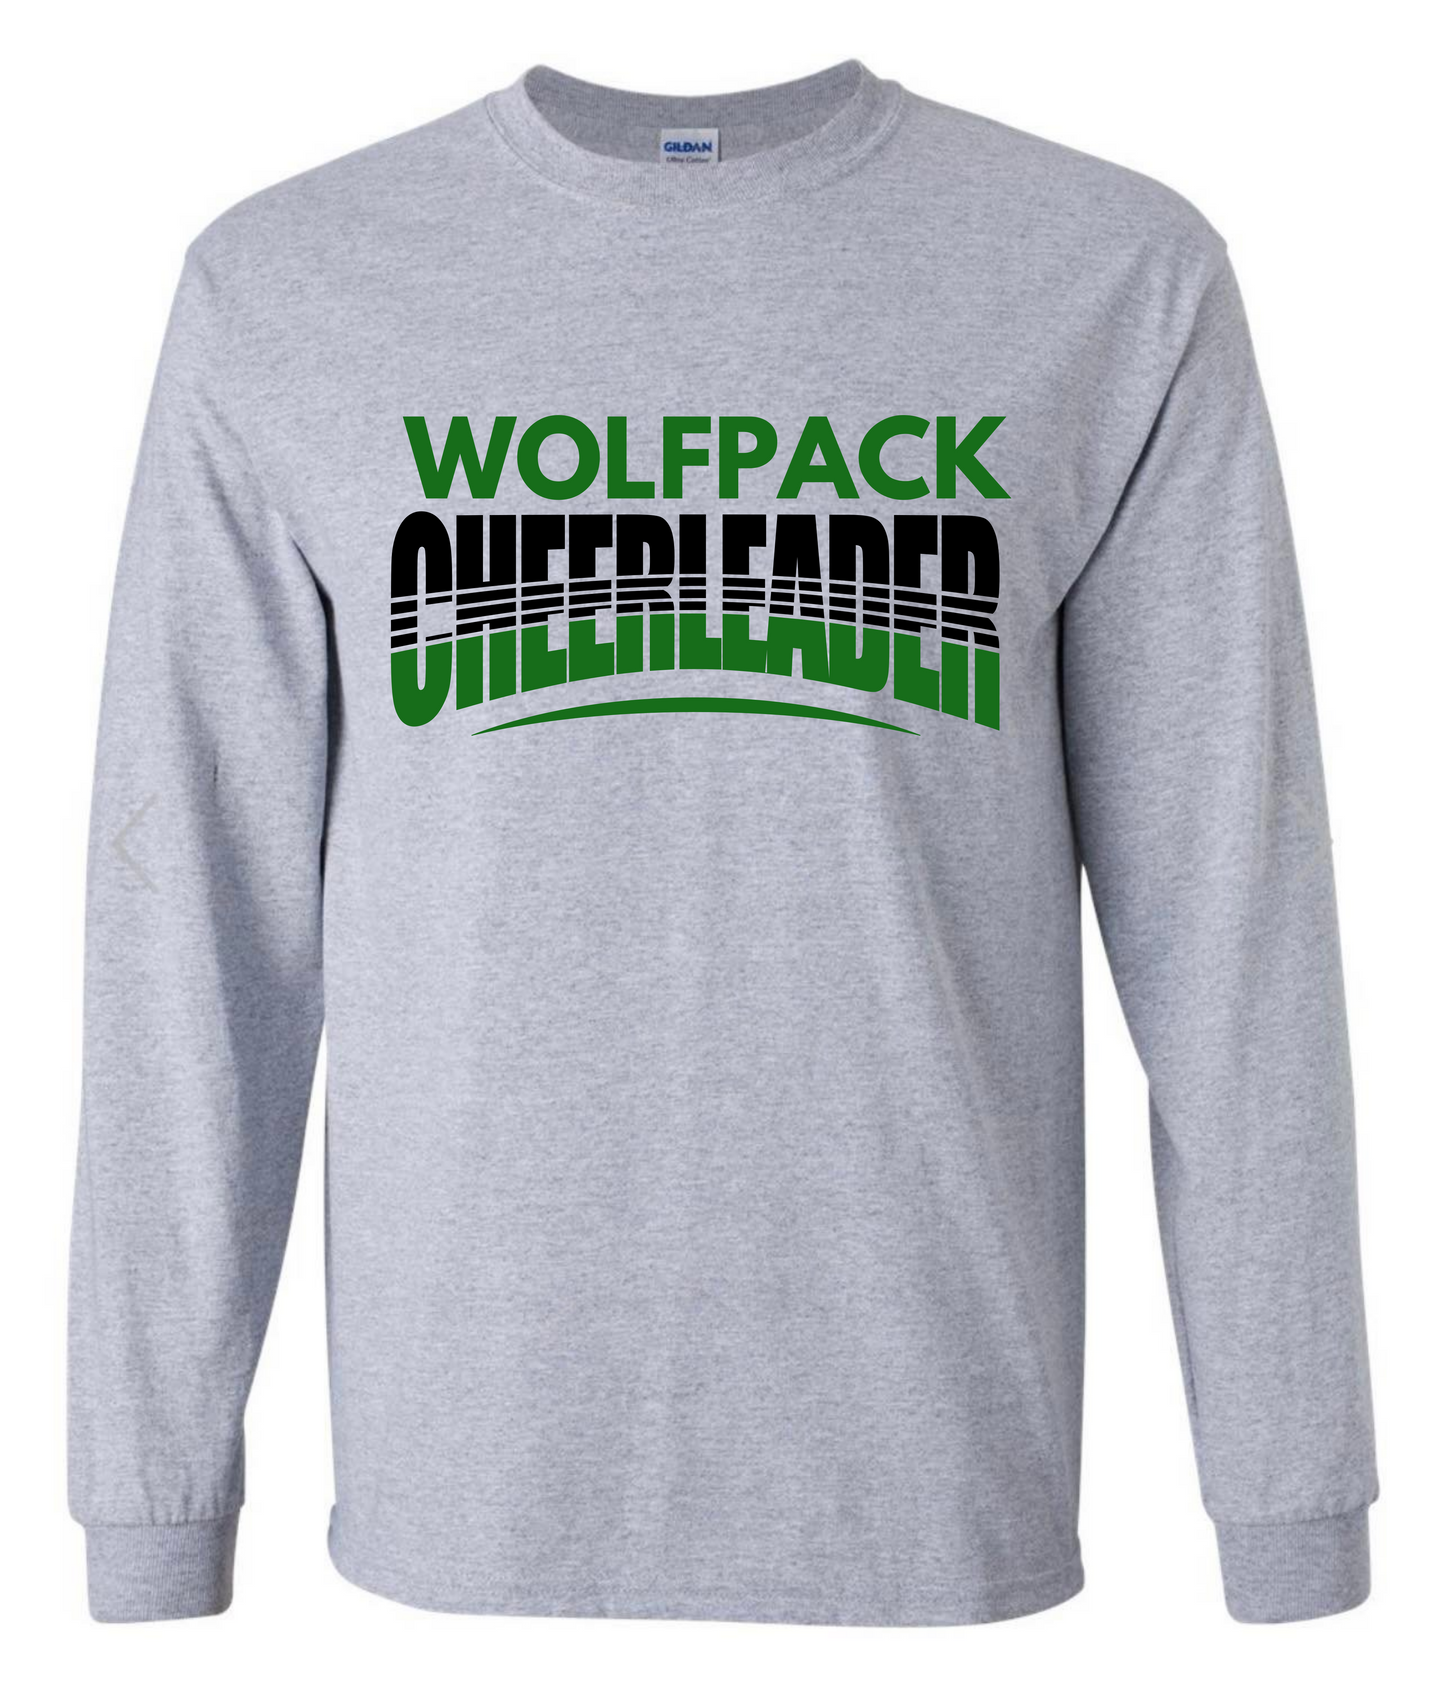 Wolfpack Cheerleader Longsleeve Tshirt